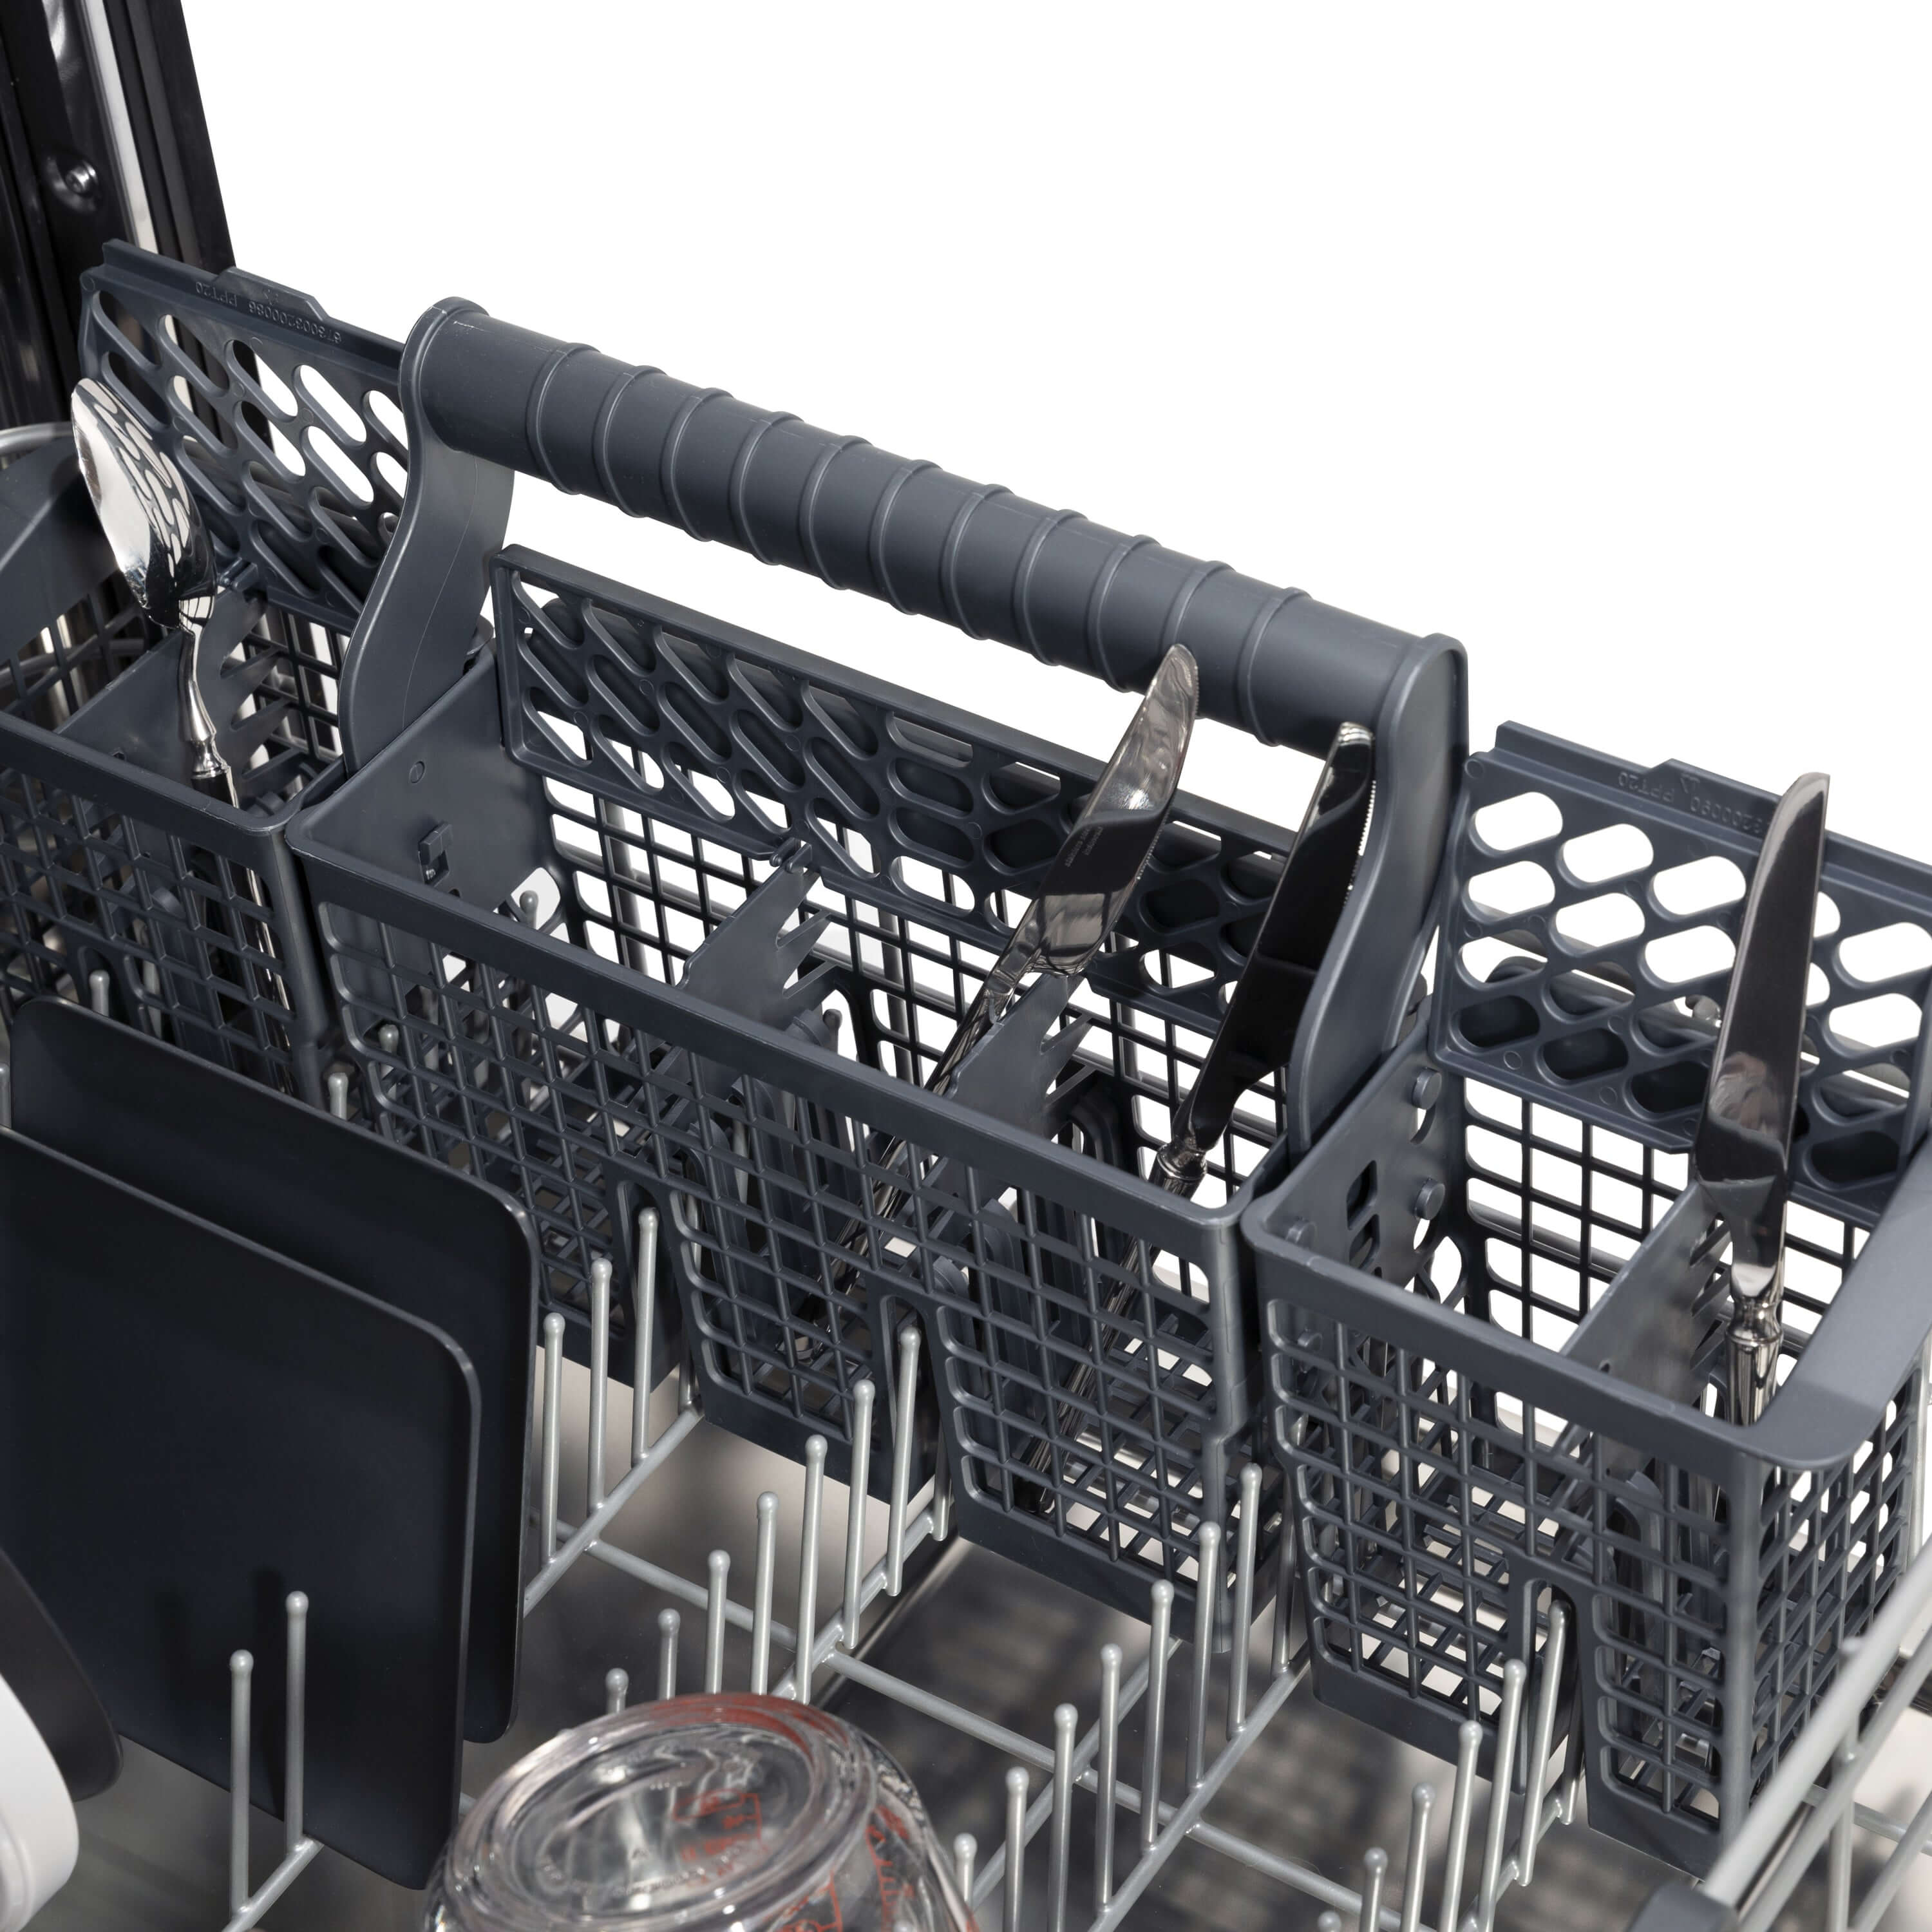 Utensil holder on bottom rack of ZLINE dishwasher.